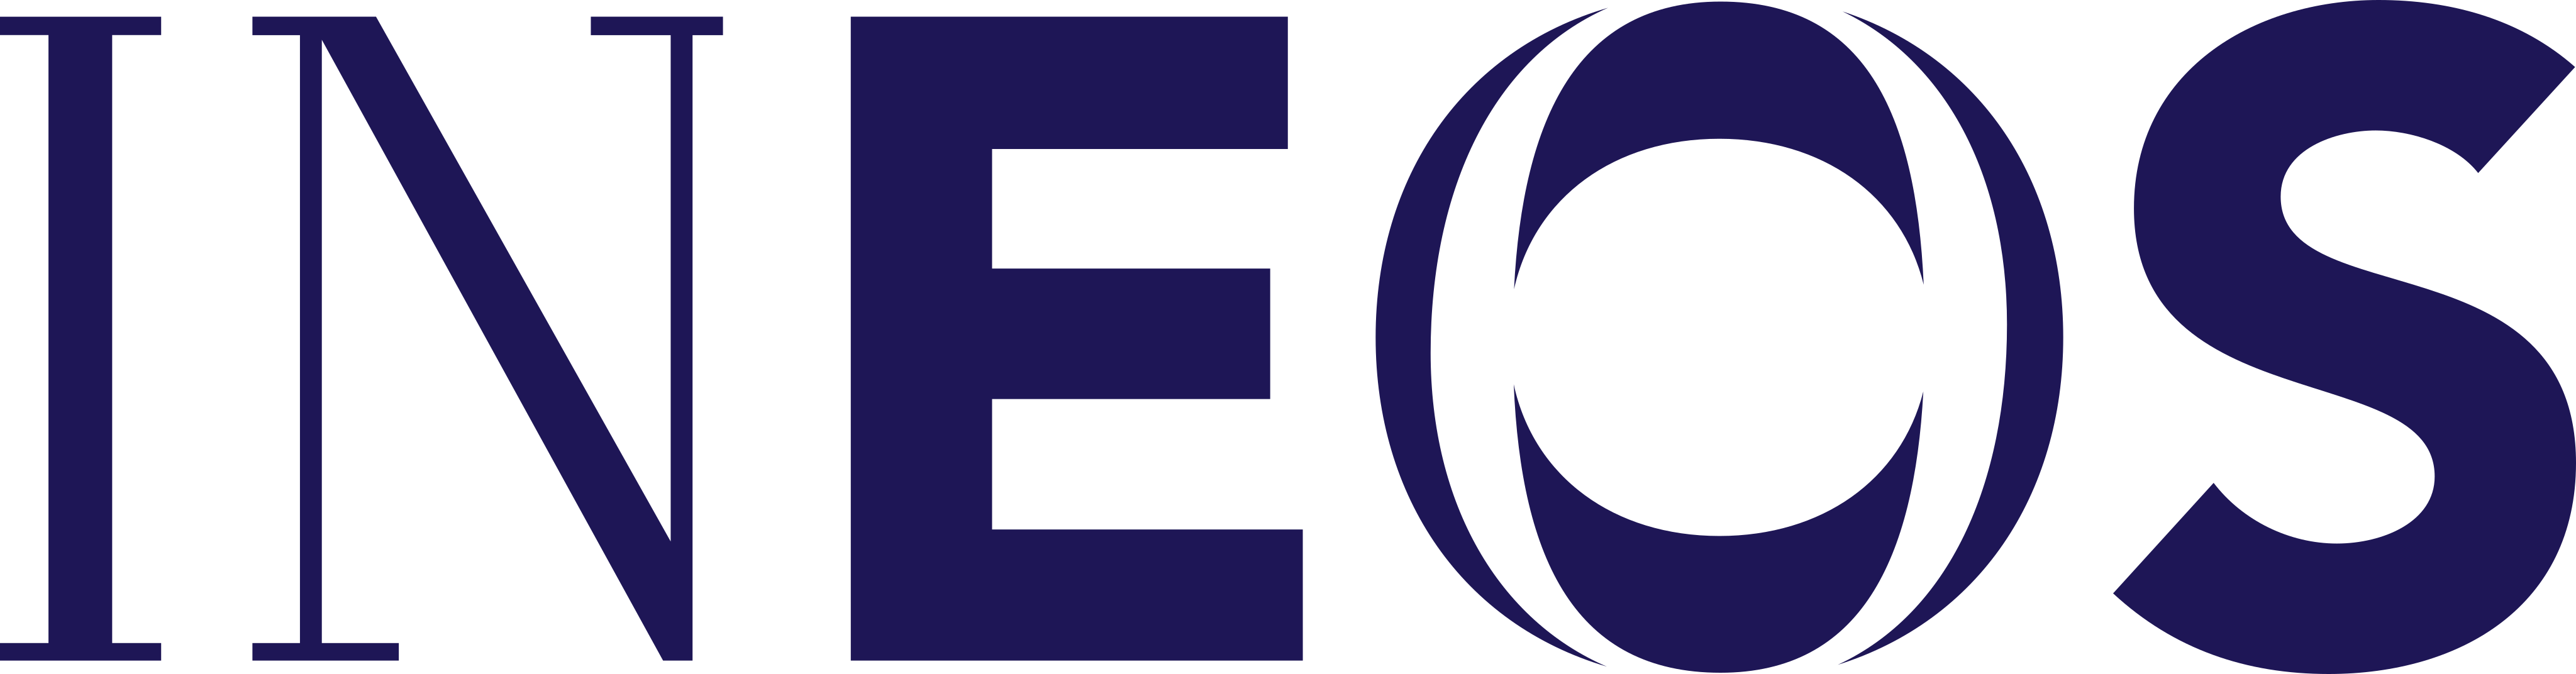 INEOS Logo.